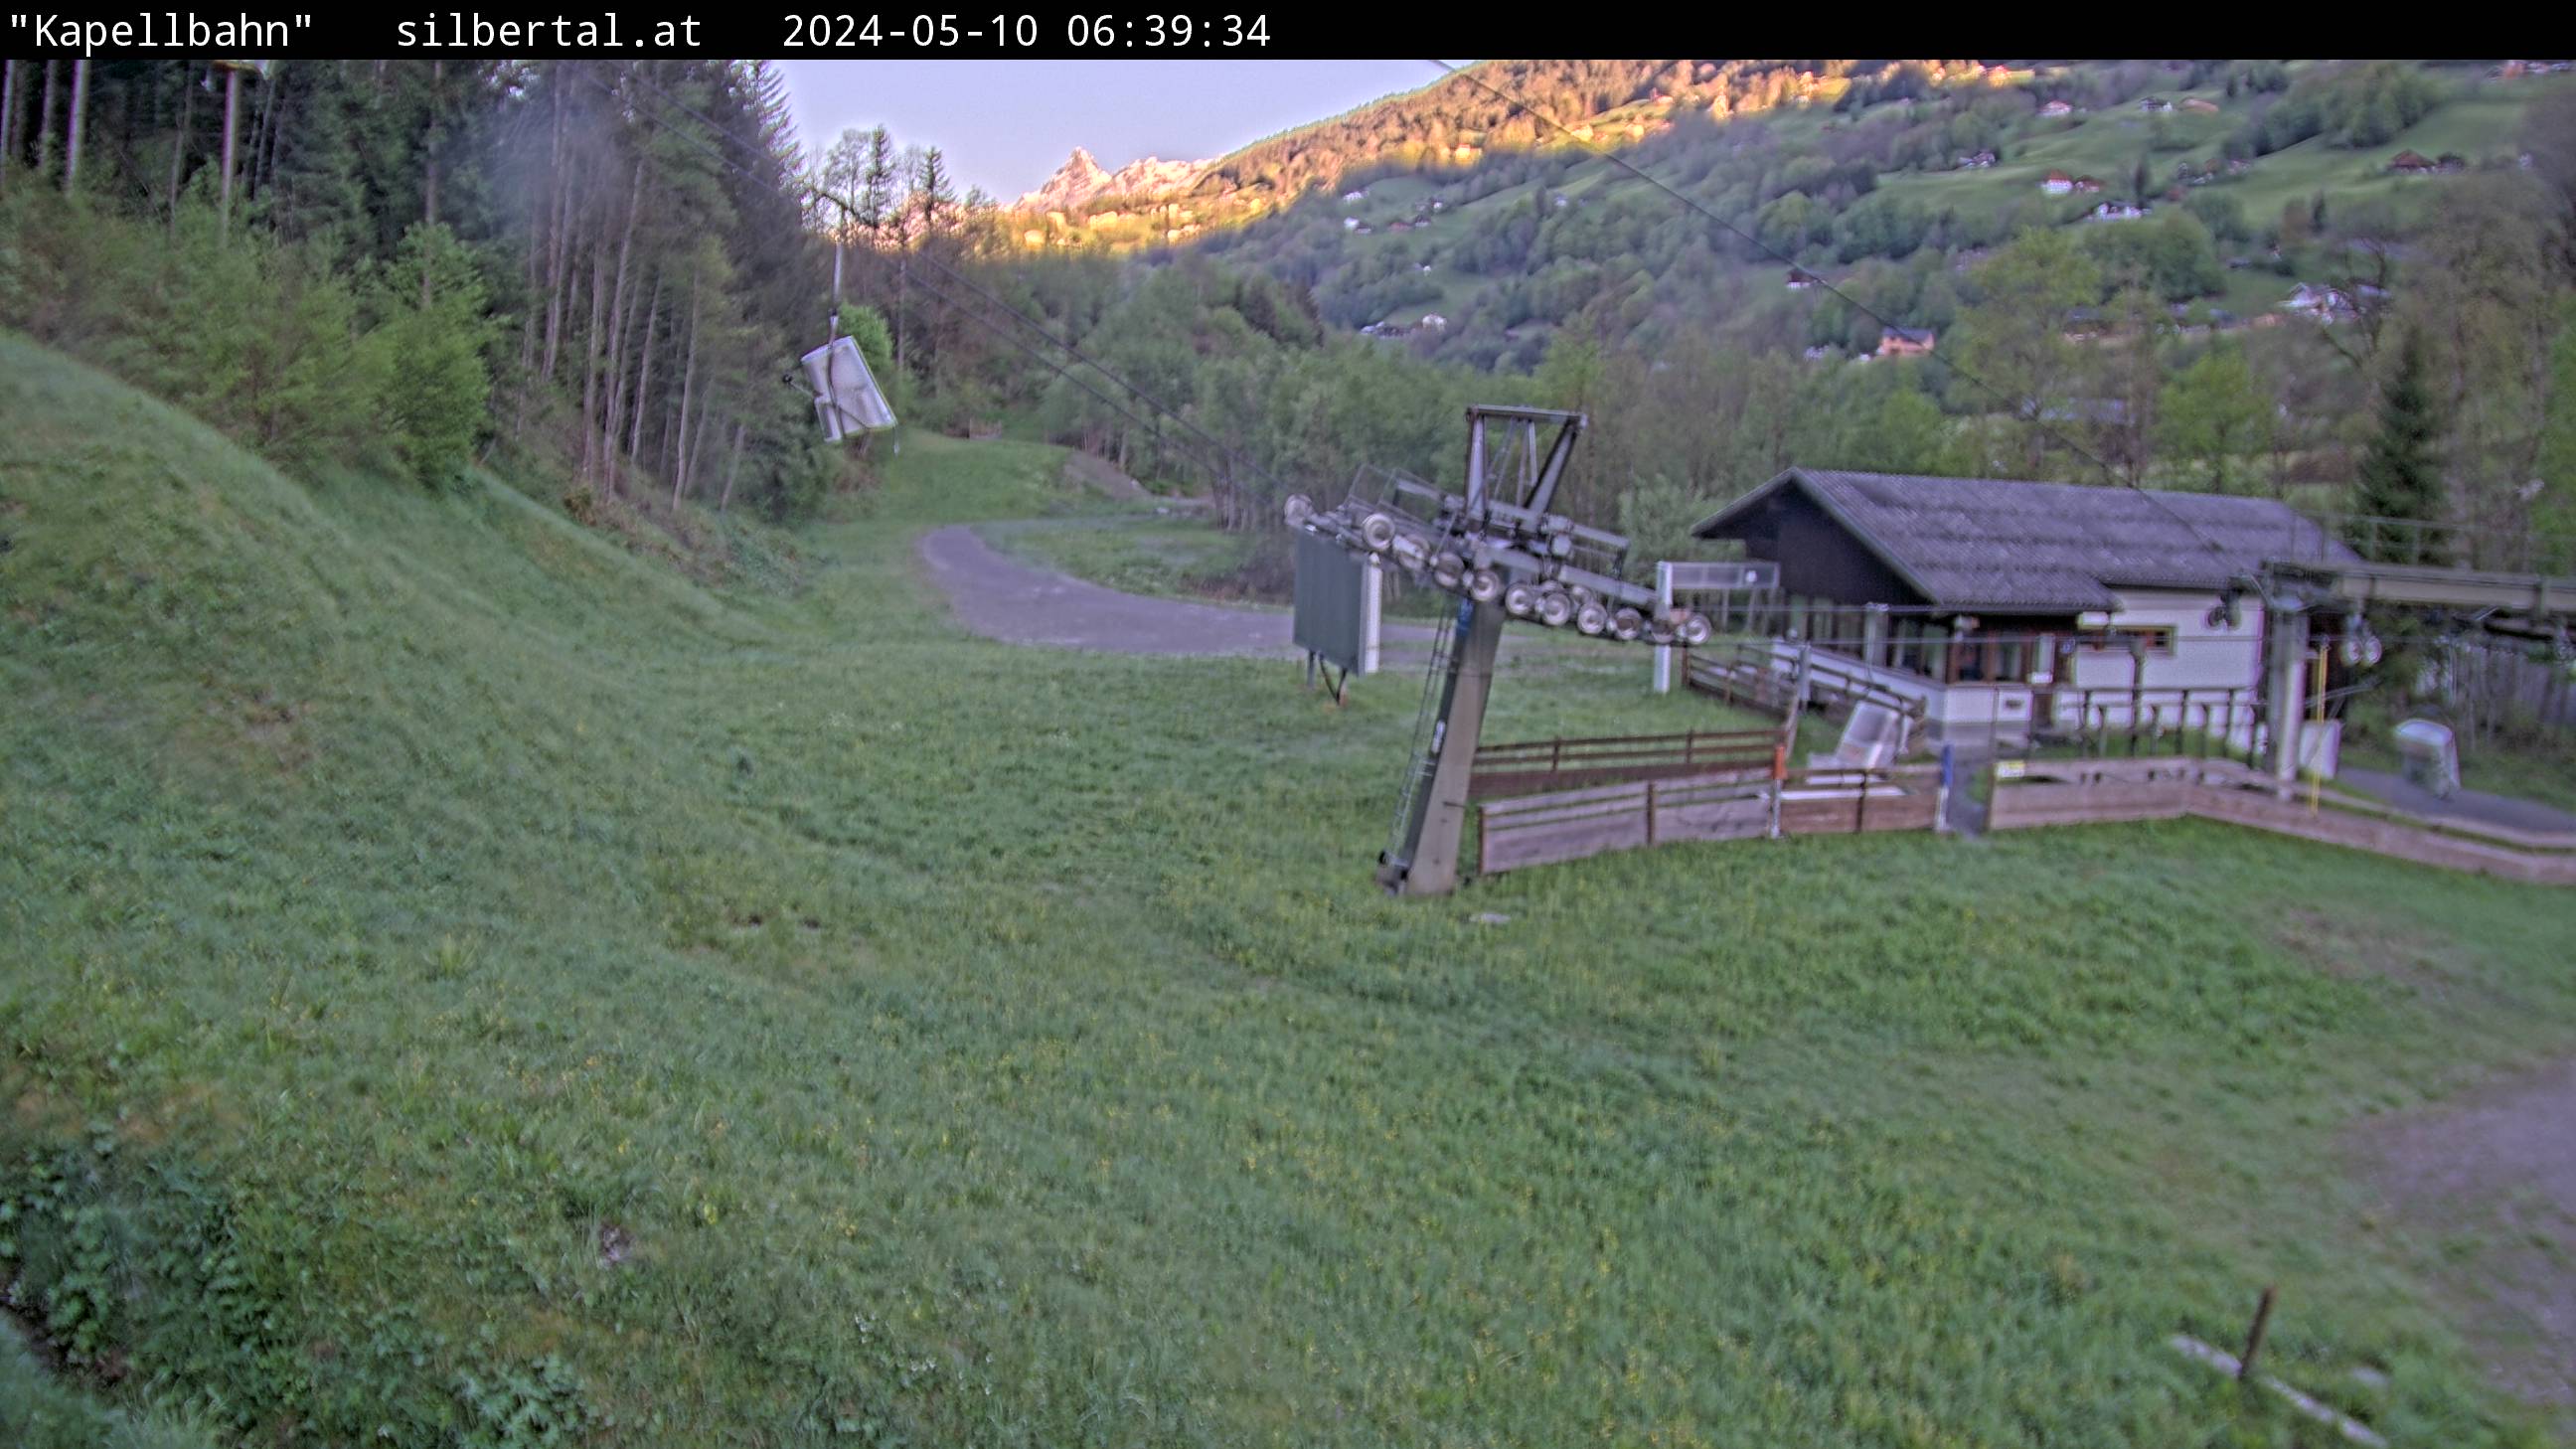 Die Webcam mit diesem Livebild zeigt die Kapellbahn vom Silbertal (http://www.silbertal.at). 